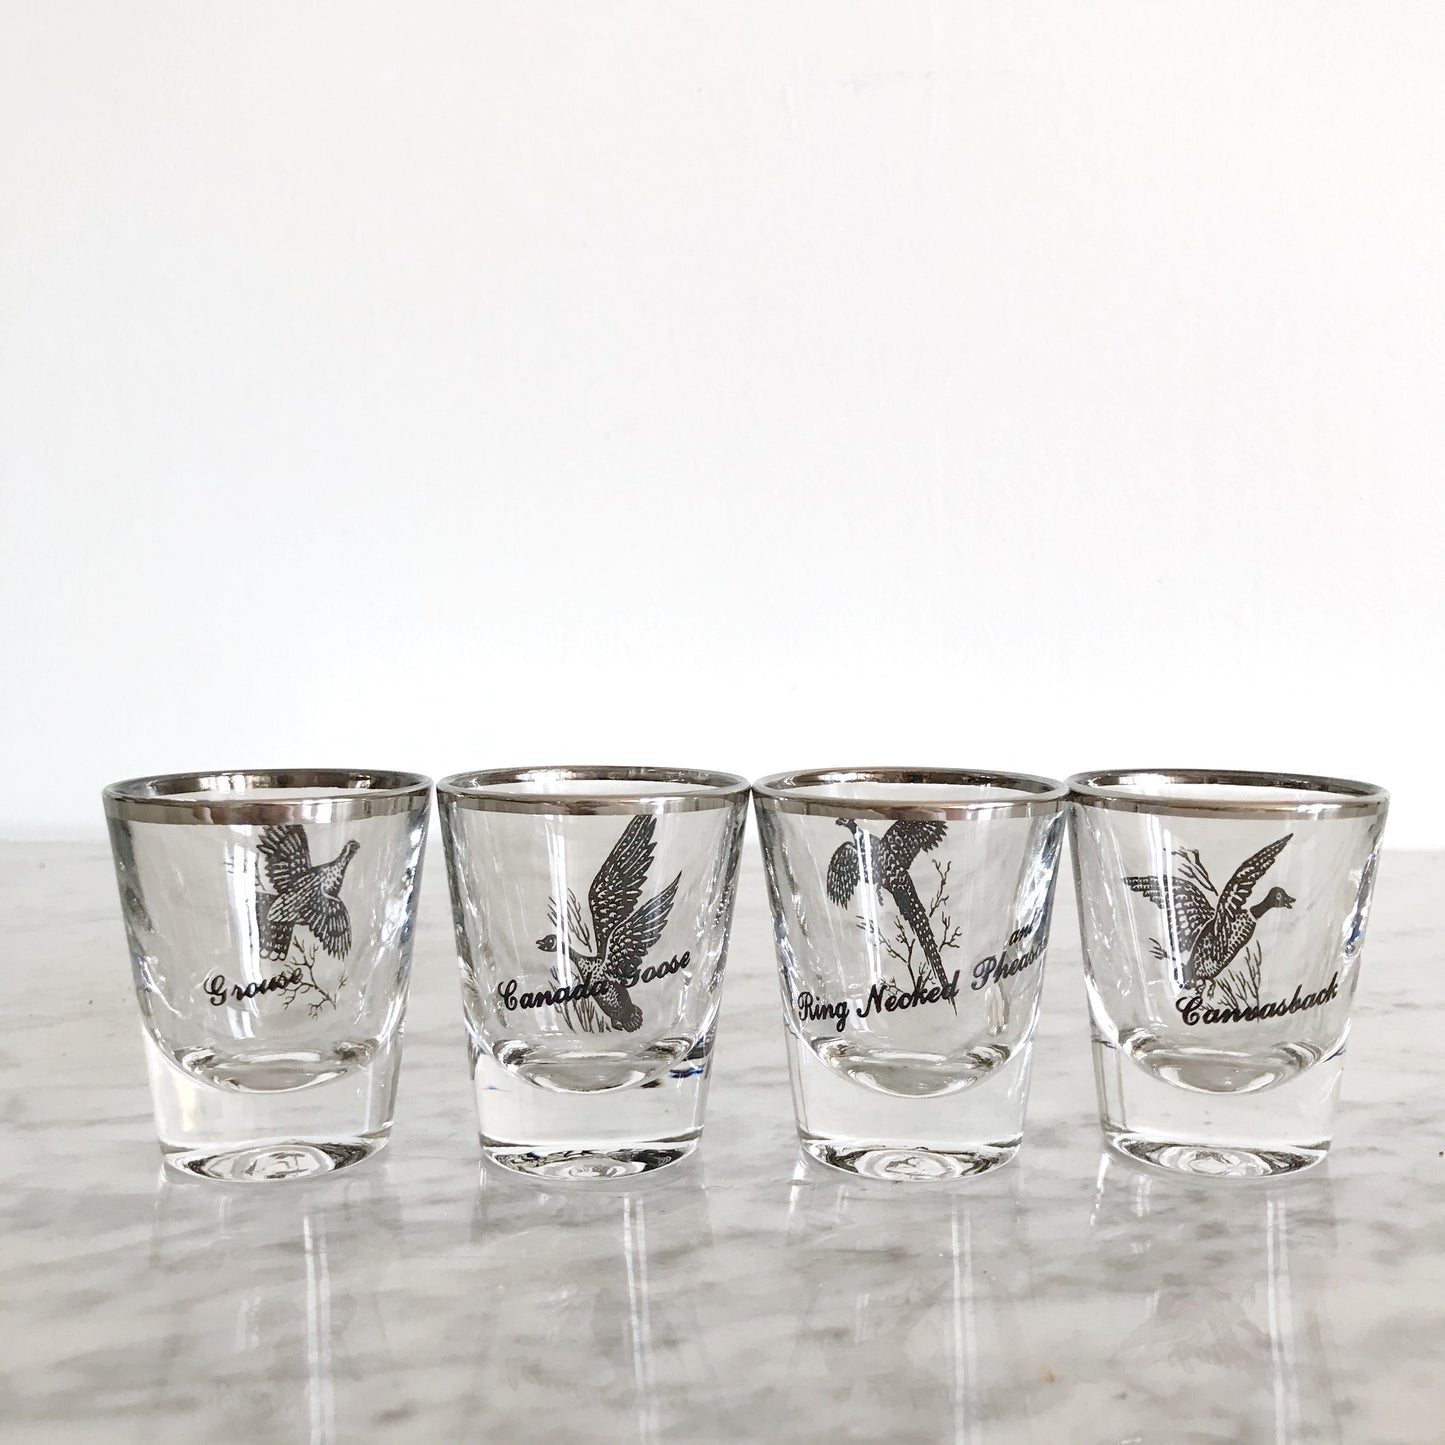 Set of 4 Vintage Bird Shot Glasses